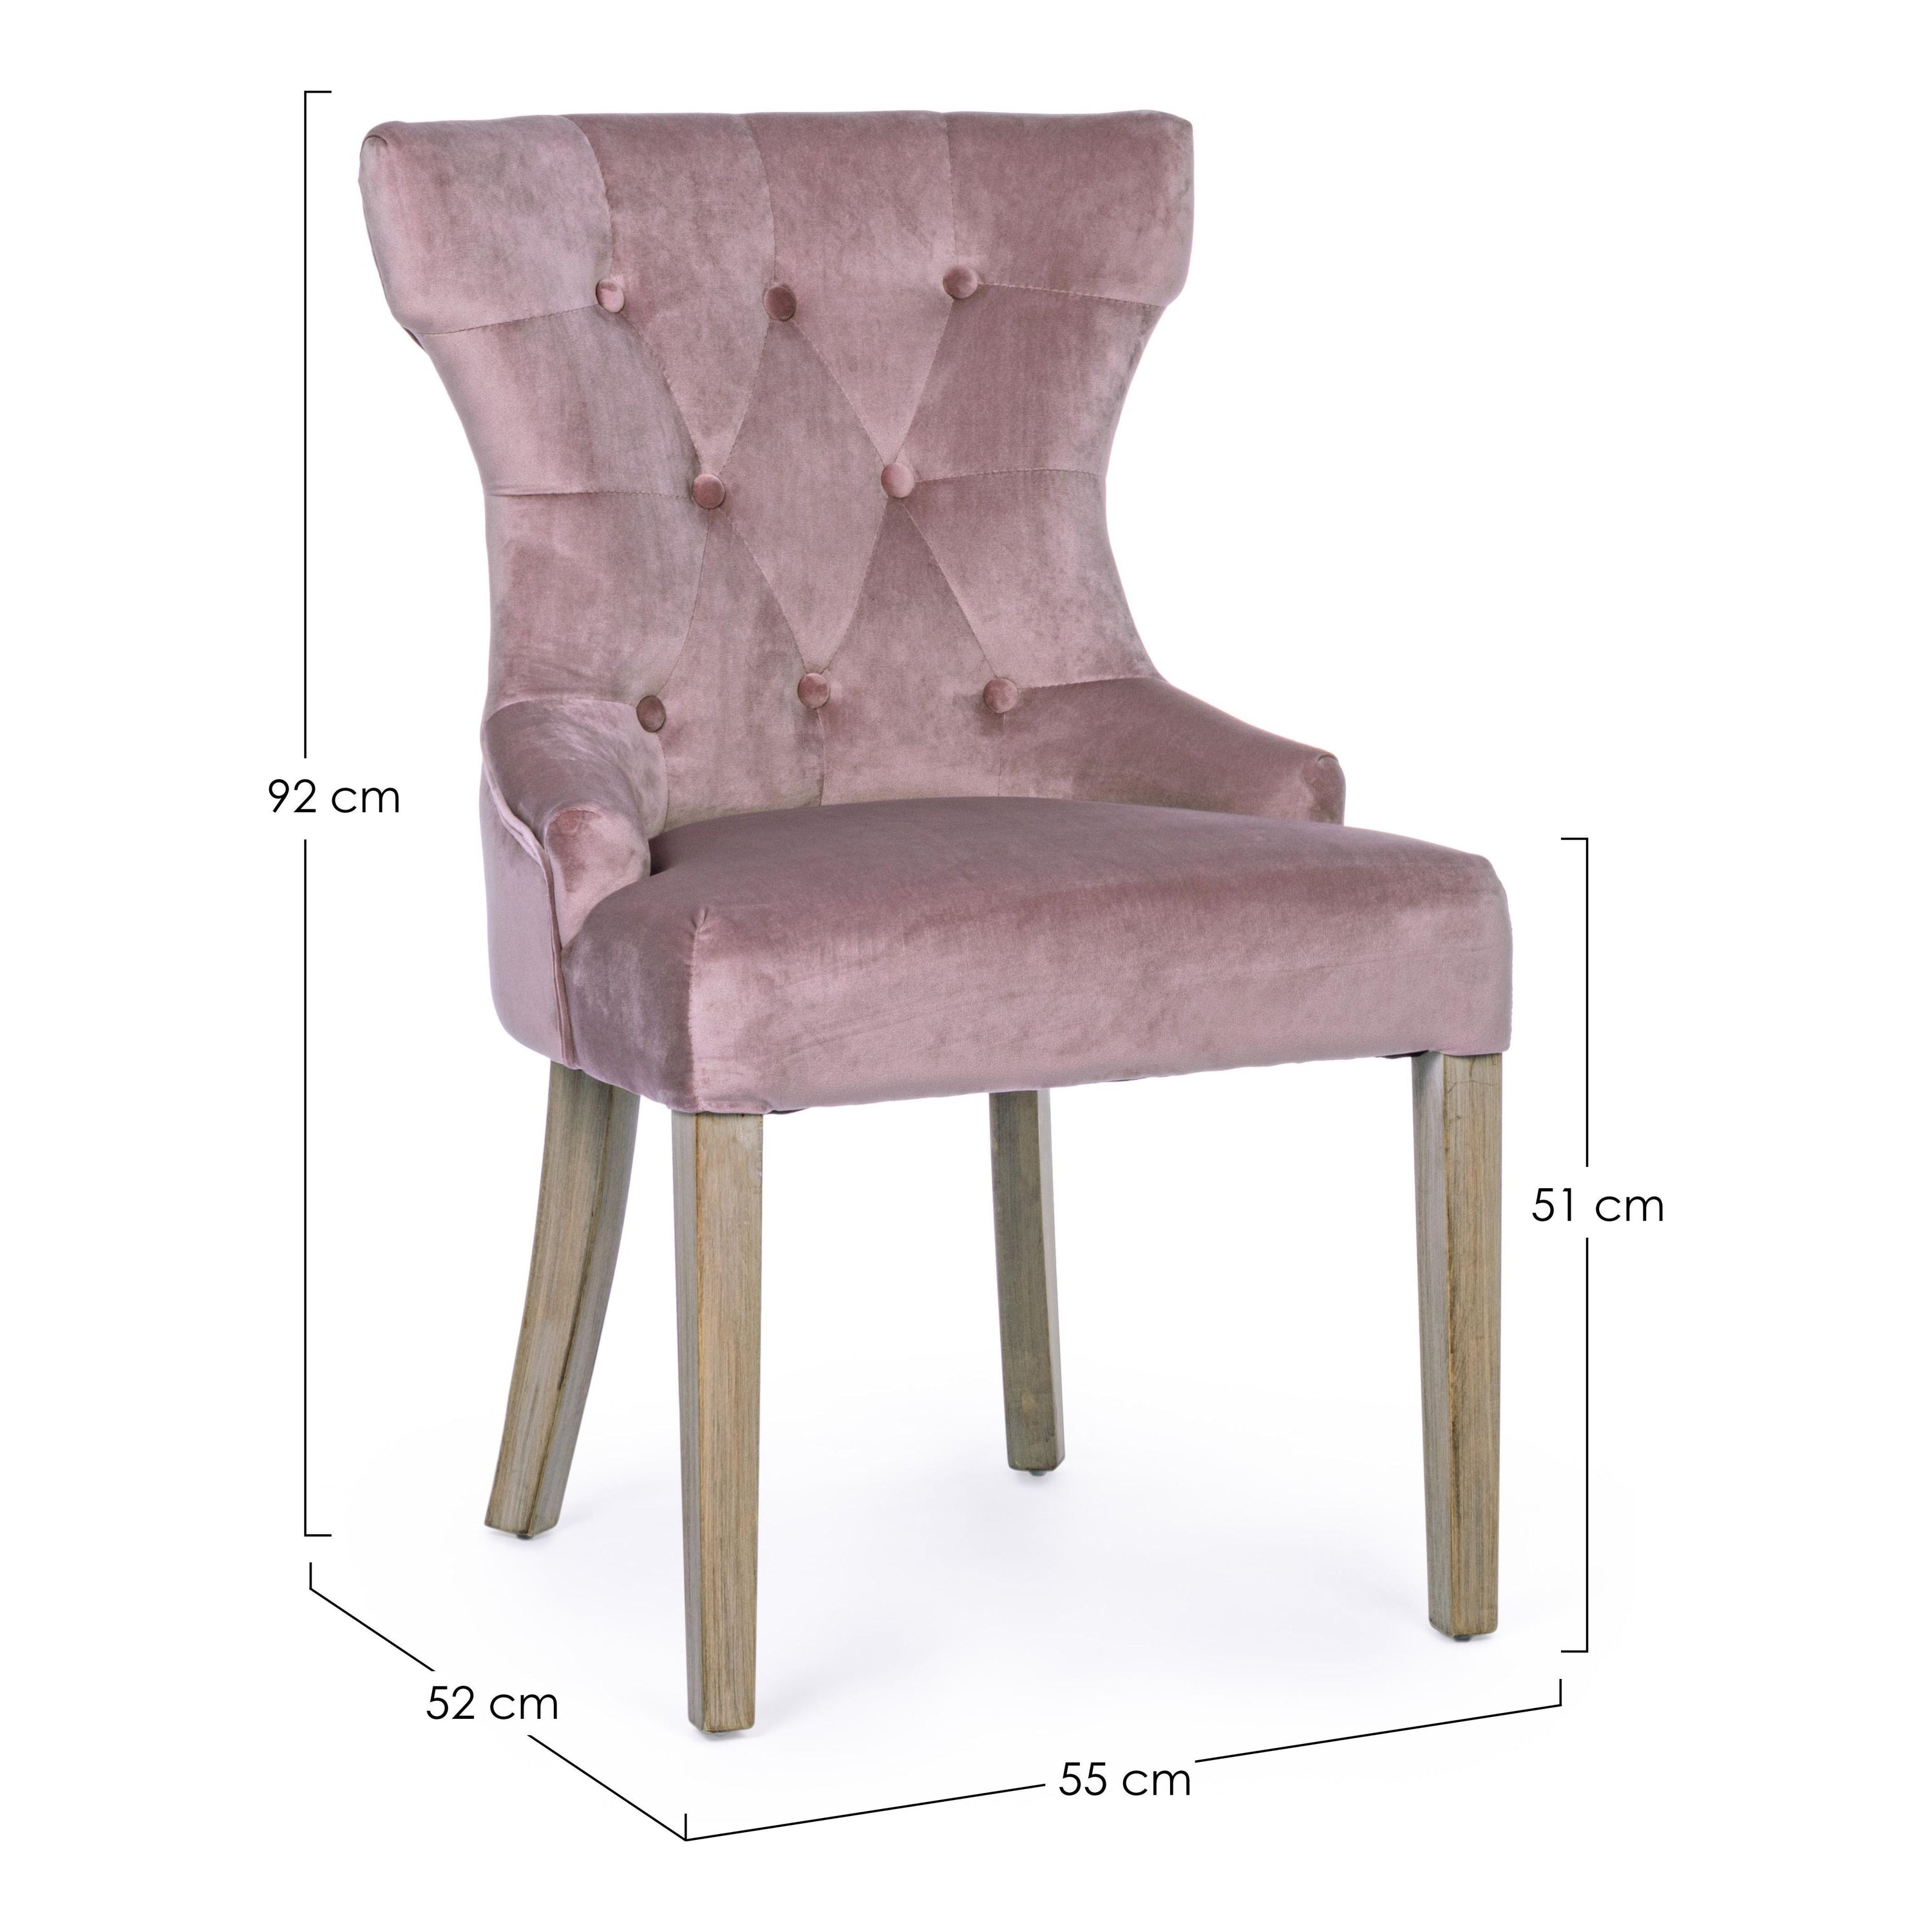 AZELIA kėdė, rožinė spalva